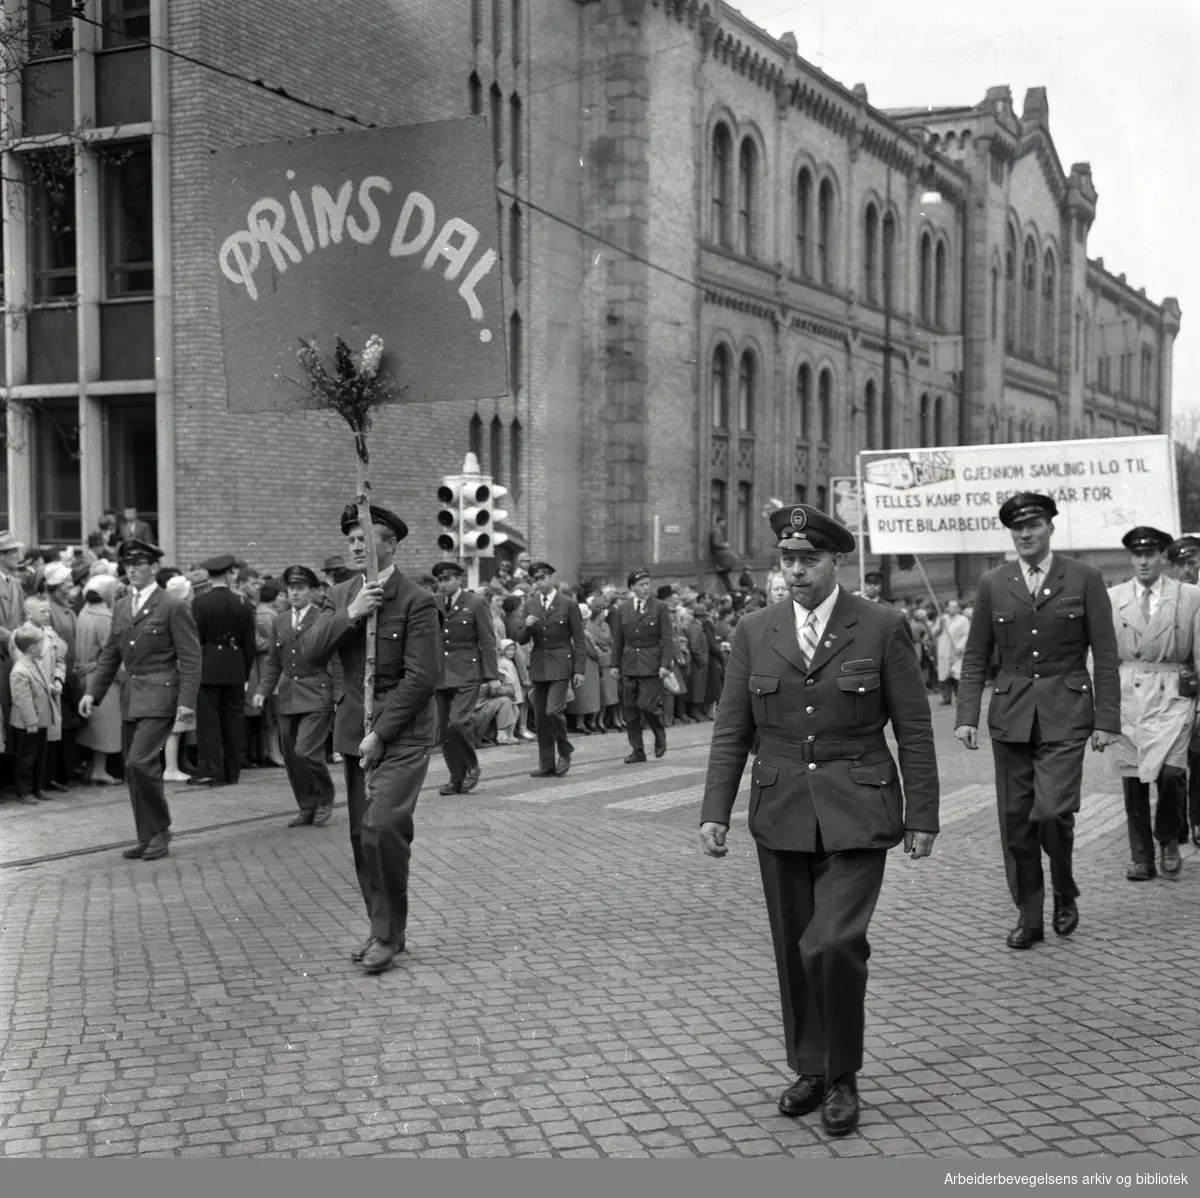 1. mai 1959 i Oslo.Karl Johans gate .Demonstrasjonstoget..Parole: Prinsdal.Gjennom samling i LO til felles kamp for bedre kår for rutebilansatte.....